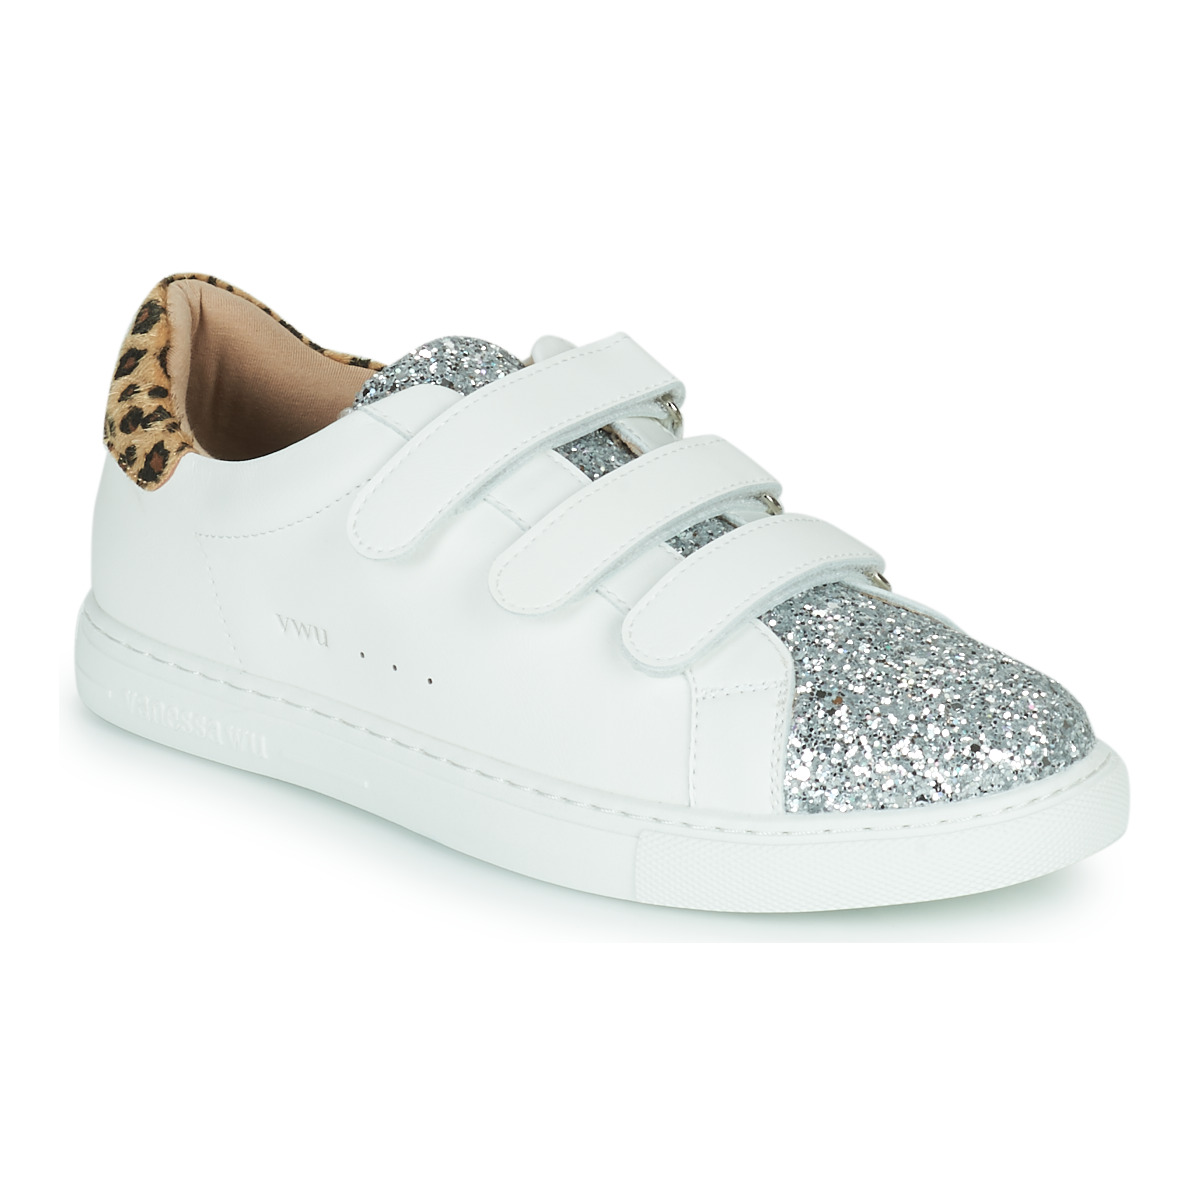 Sko Dame Lave sneakers Vanessa Wu  Hvid / Leopard